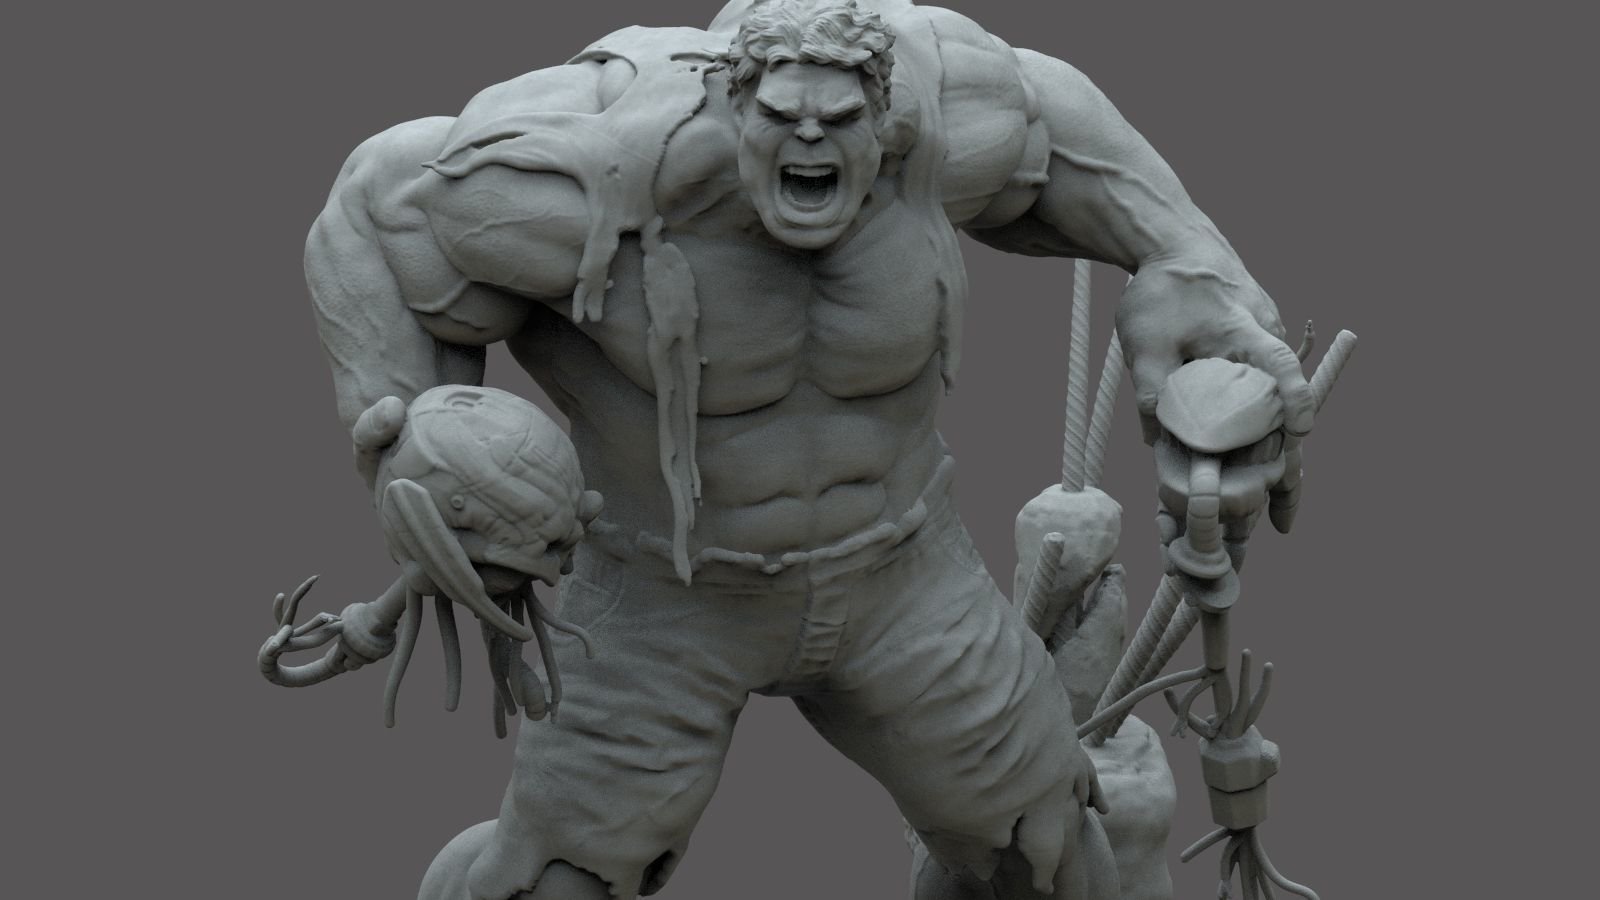 Fan Art Models Hulk Avenger Age of Ultron from Marvel comics  MINISTL 5